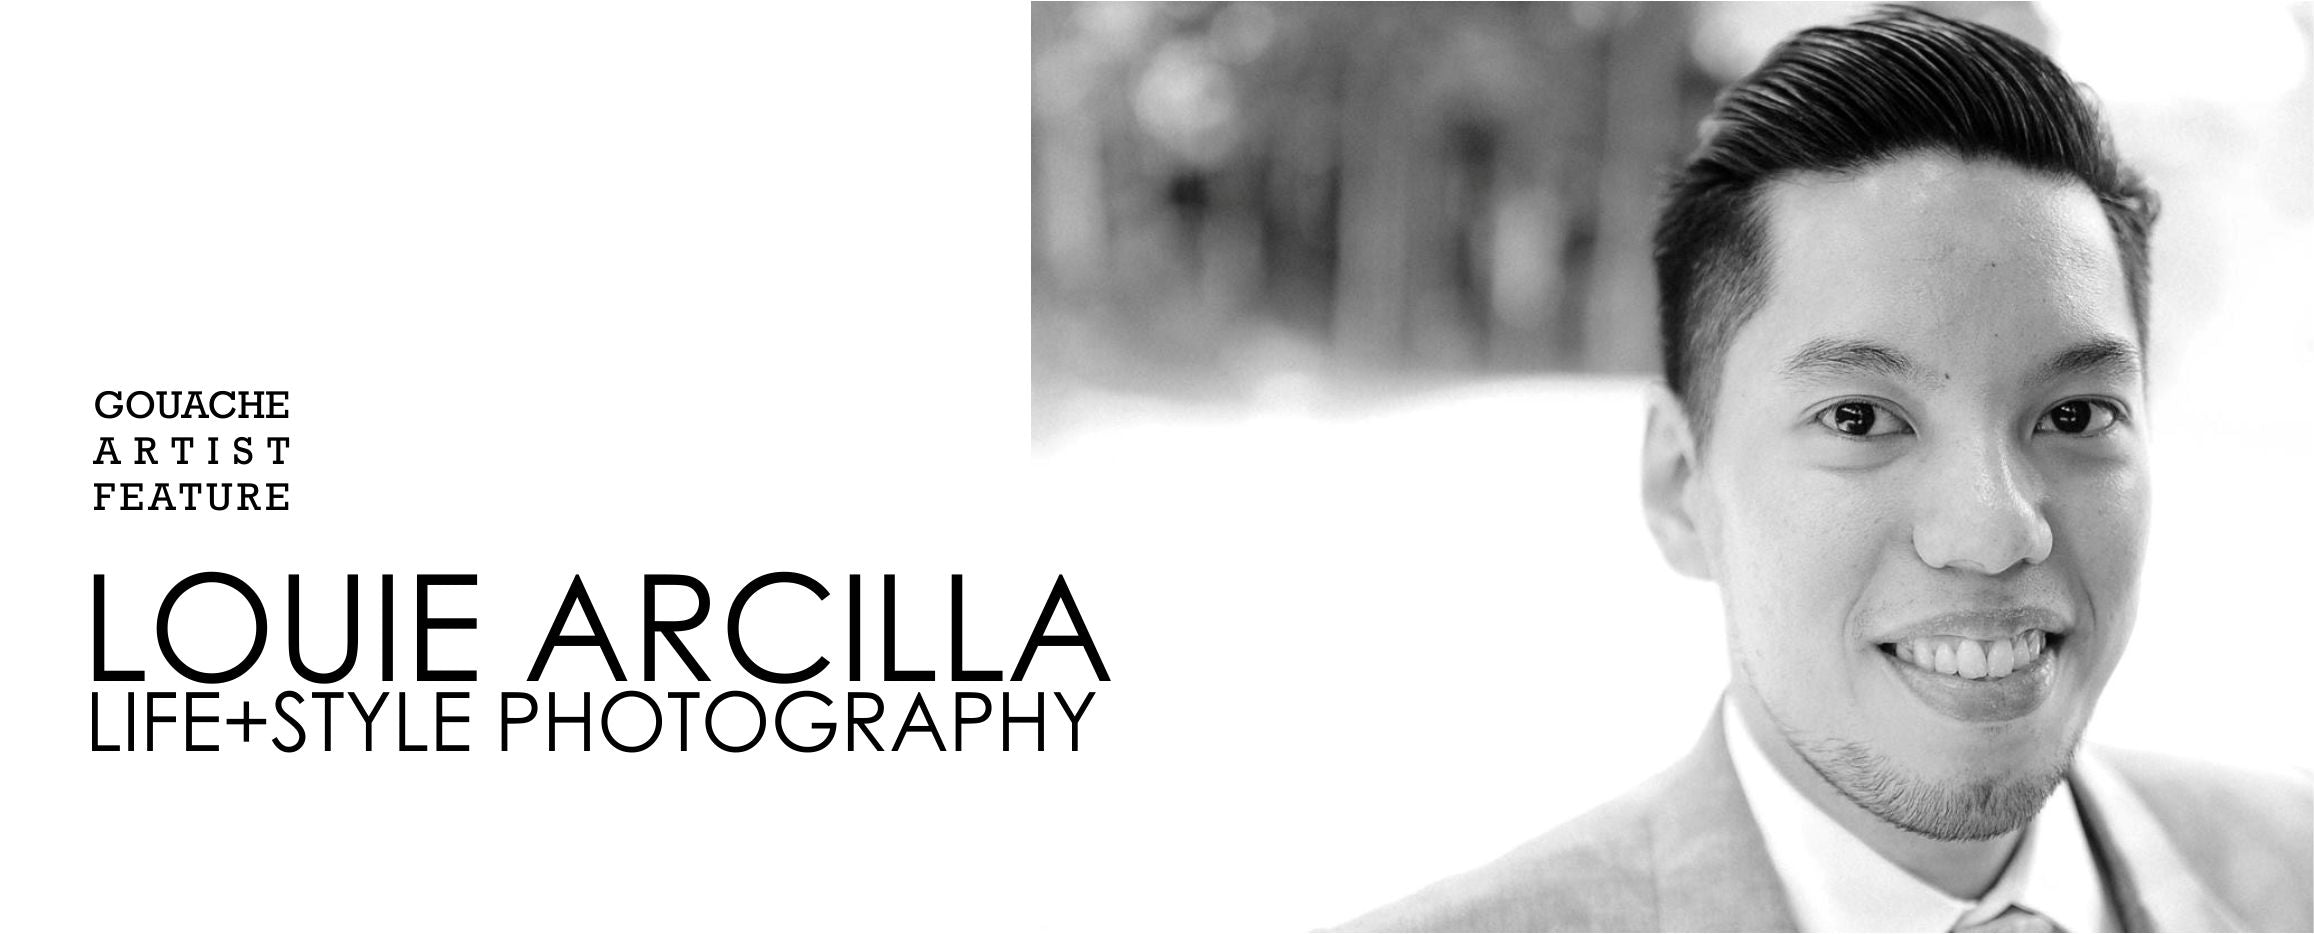 Artist Feature: Louie Arcilla